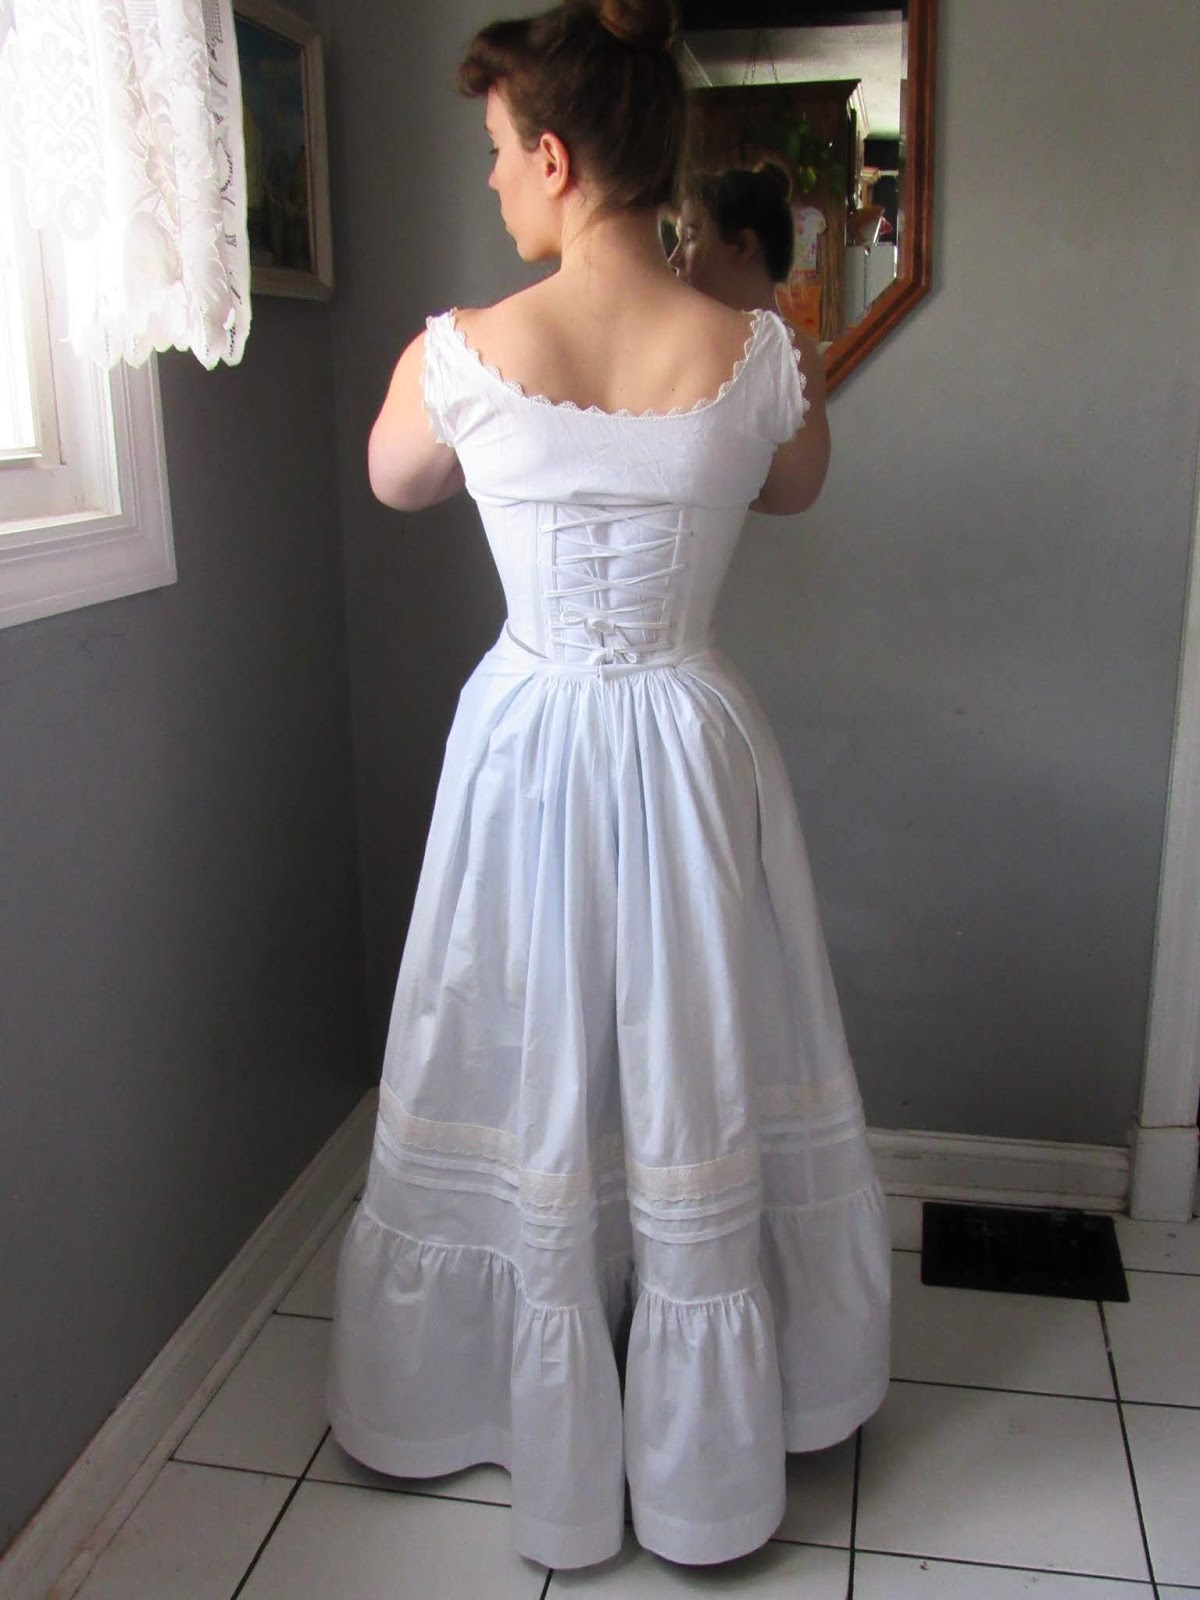 Making a Ruffly Petticoat | Sewing dresses, Petticoat pattern, Dress making